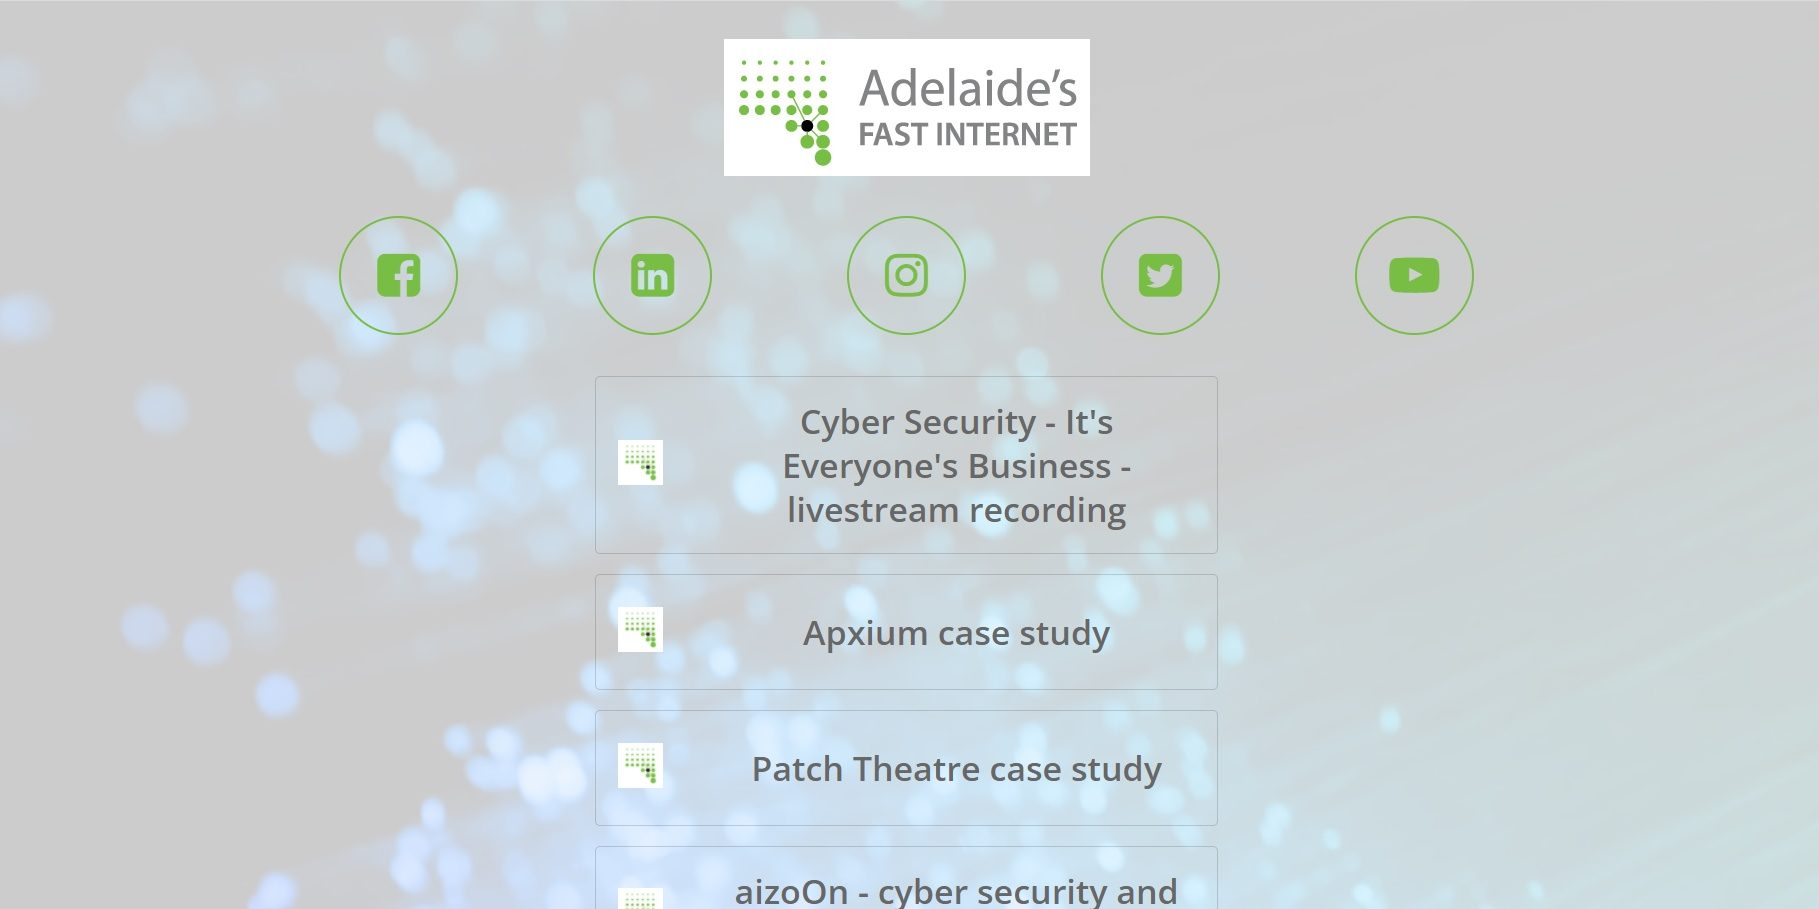 Adelaides Fast internet Instagram Link Site